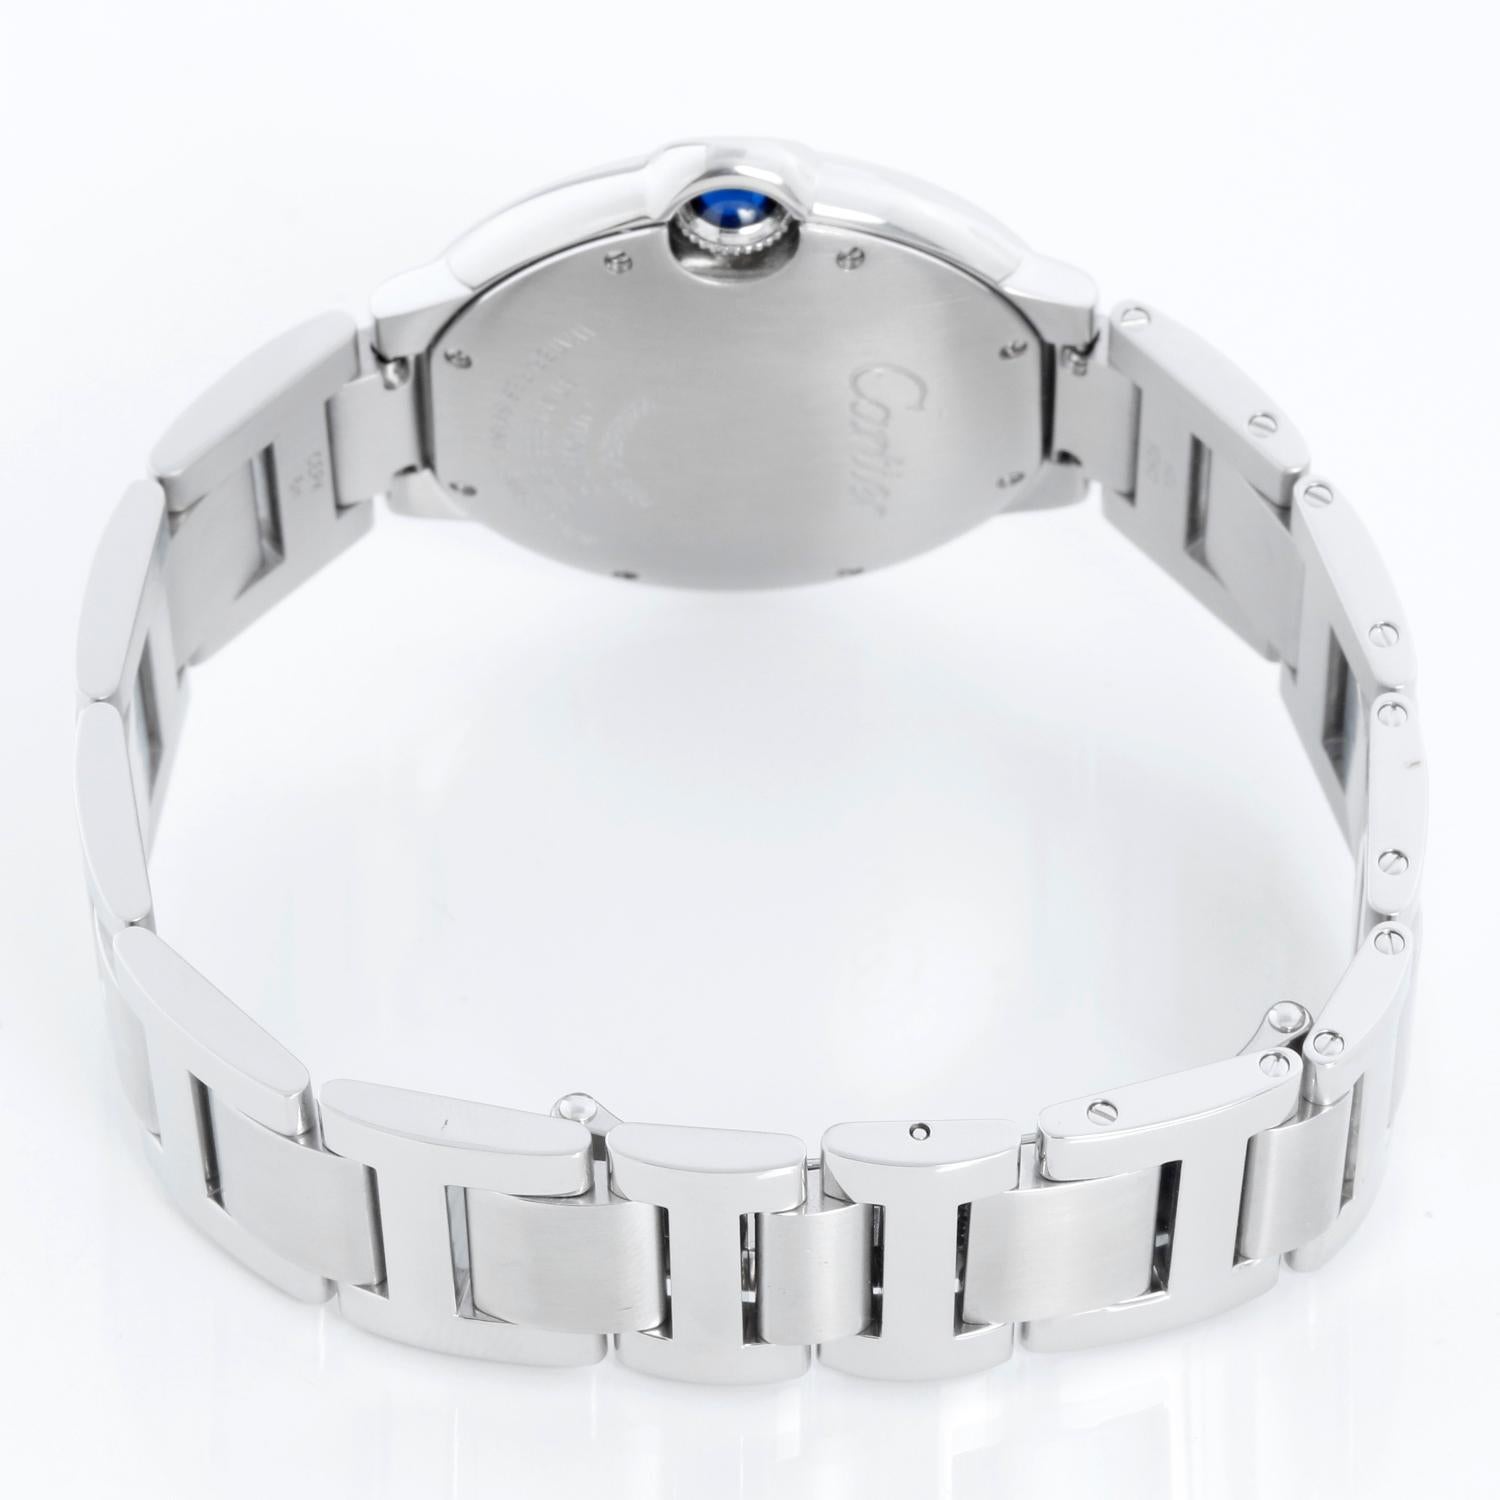 Cartier Ballon Bleu Midsize Stainless Steel Watch W6920046 3284 For Sale 1